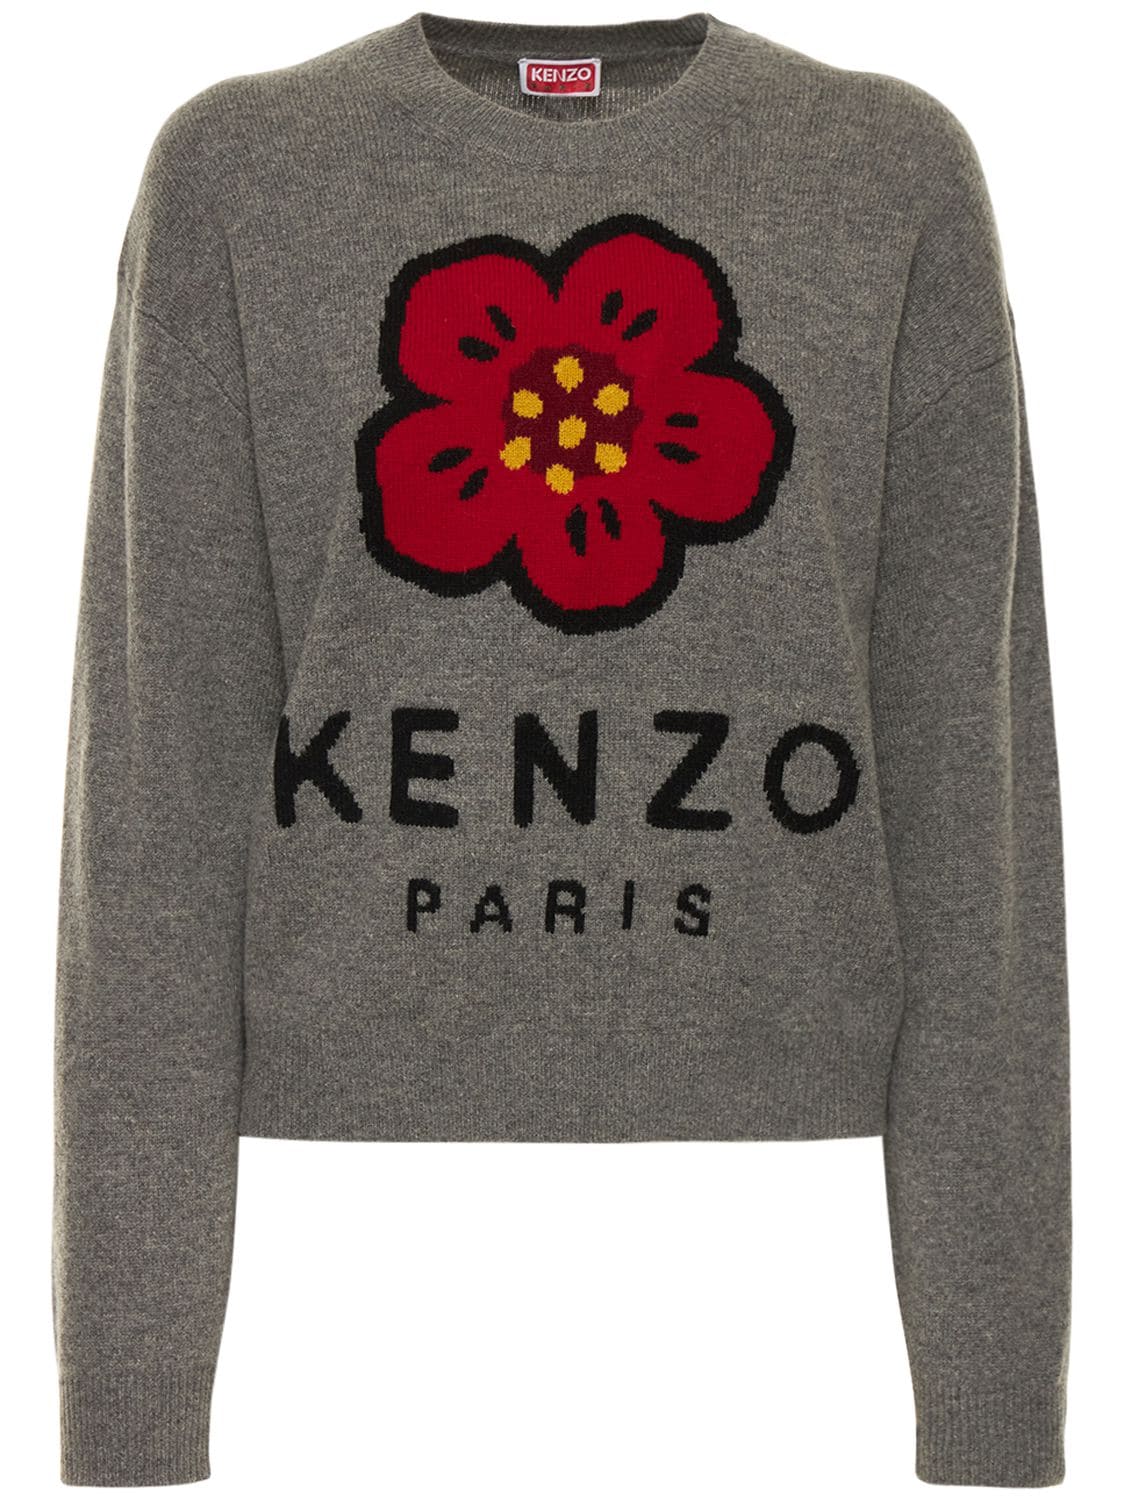 KENZO PARIS Logo Comfort Wool Sweater